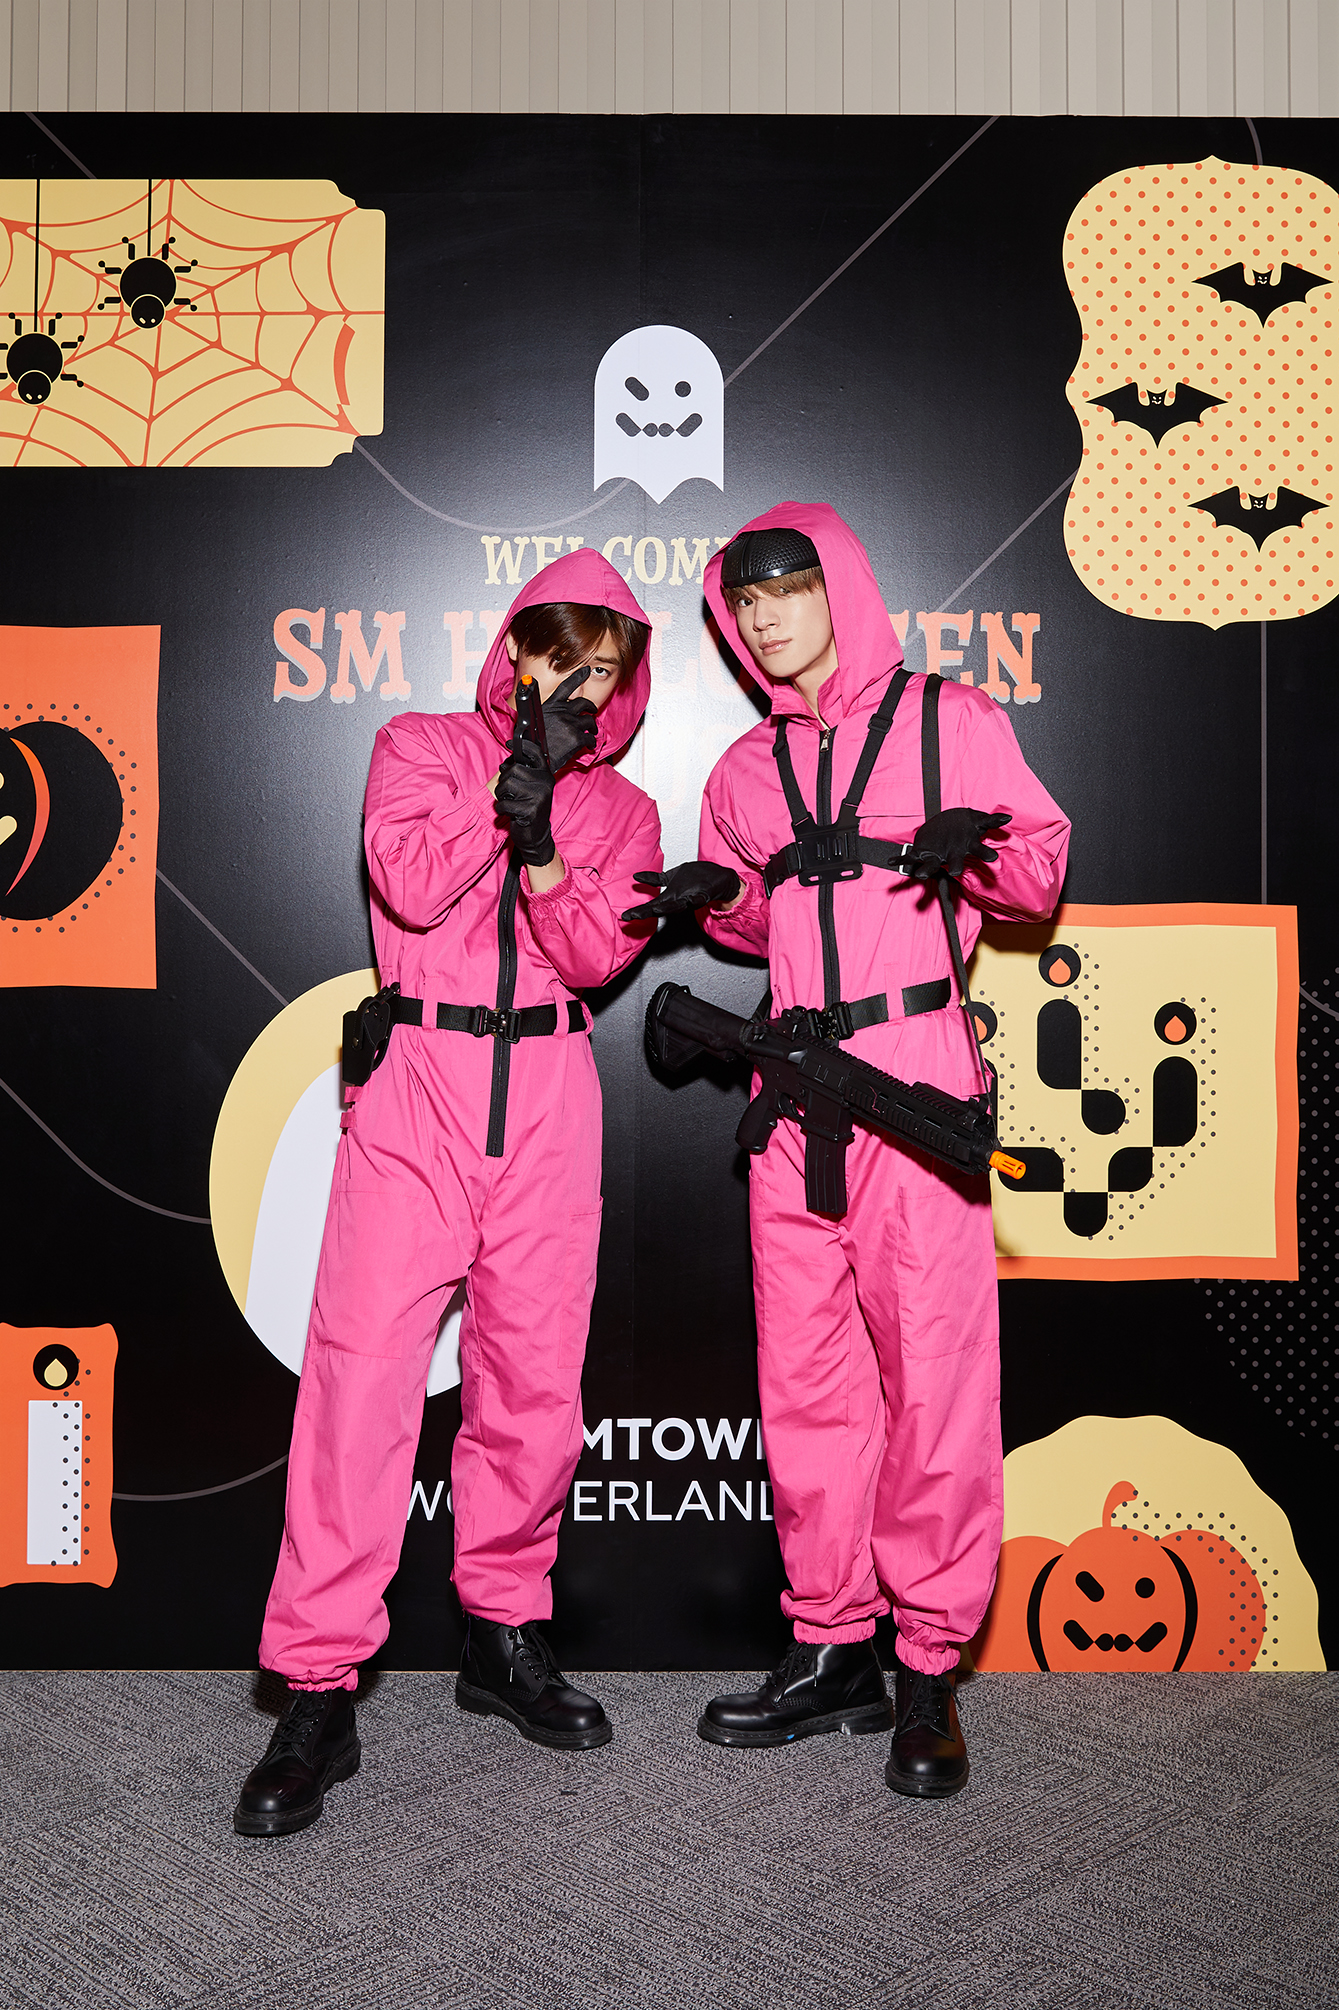 Jaemin và Jeno (NCT) lại chọn trở thành những tên lính canh trong 'Squid Game' với bộ đồ màu hồng, mặt nạ đen và không quên trang bị cả súng.